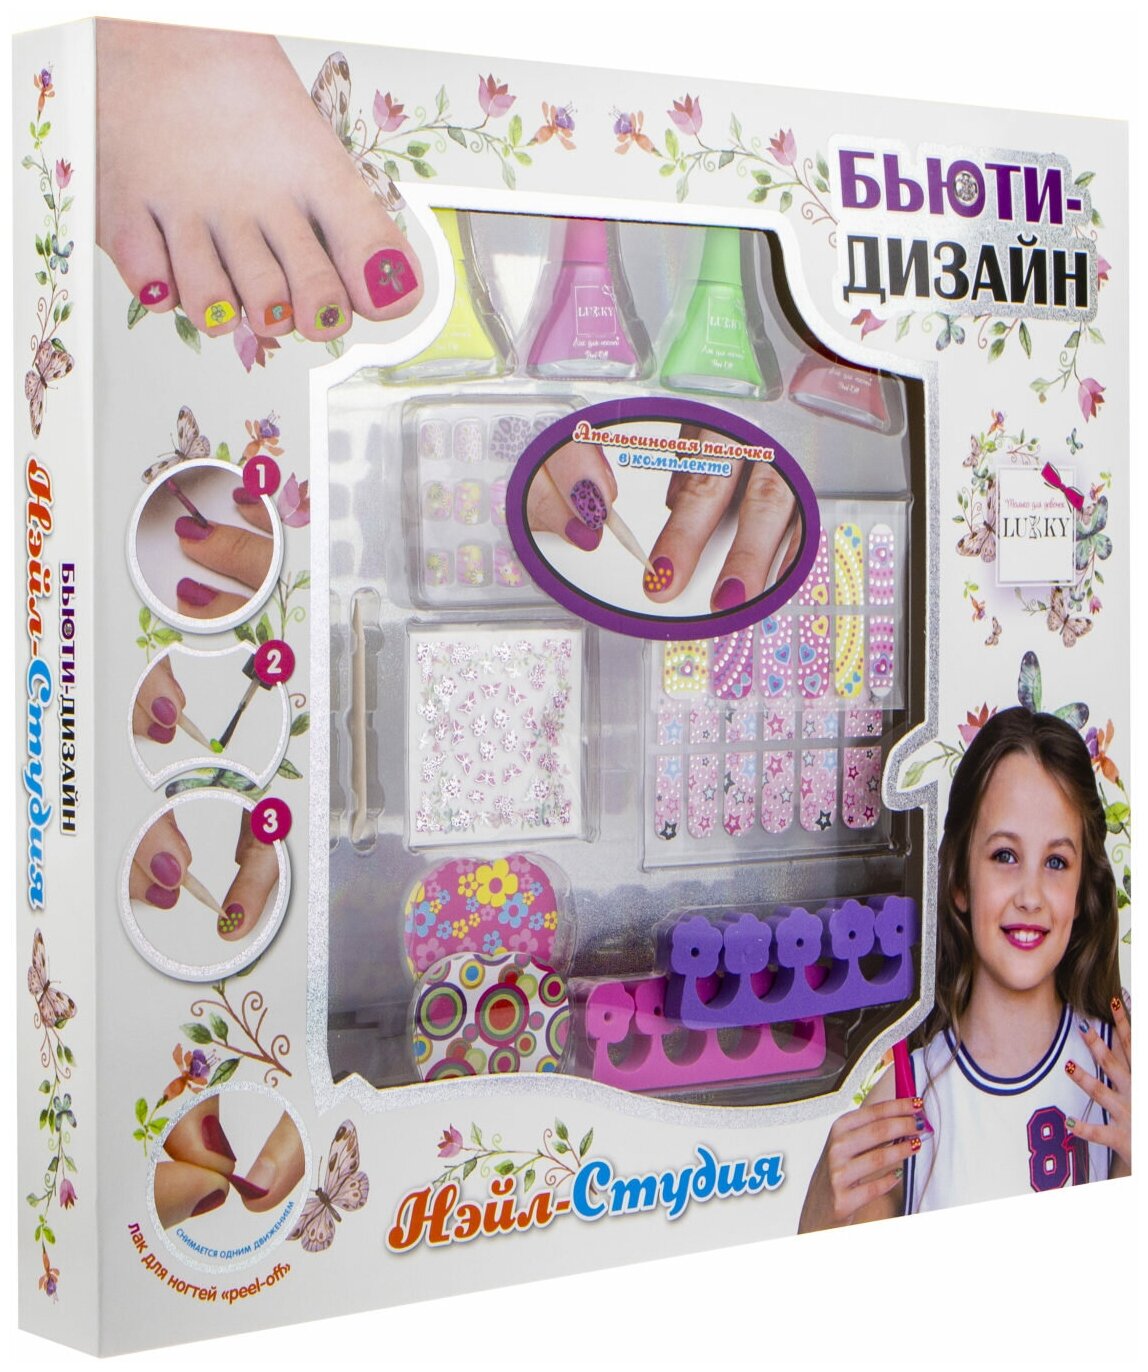 Набор Lukky Бьюти-Дизай для дизайна ногтей "Нэйл-Студия" с лаками для ногтей